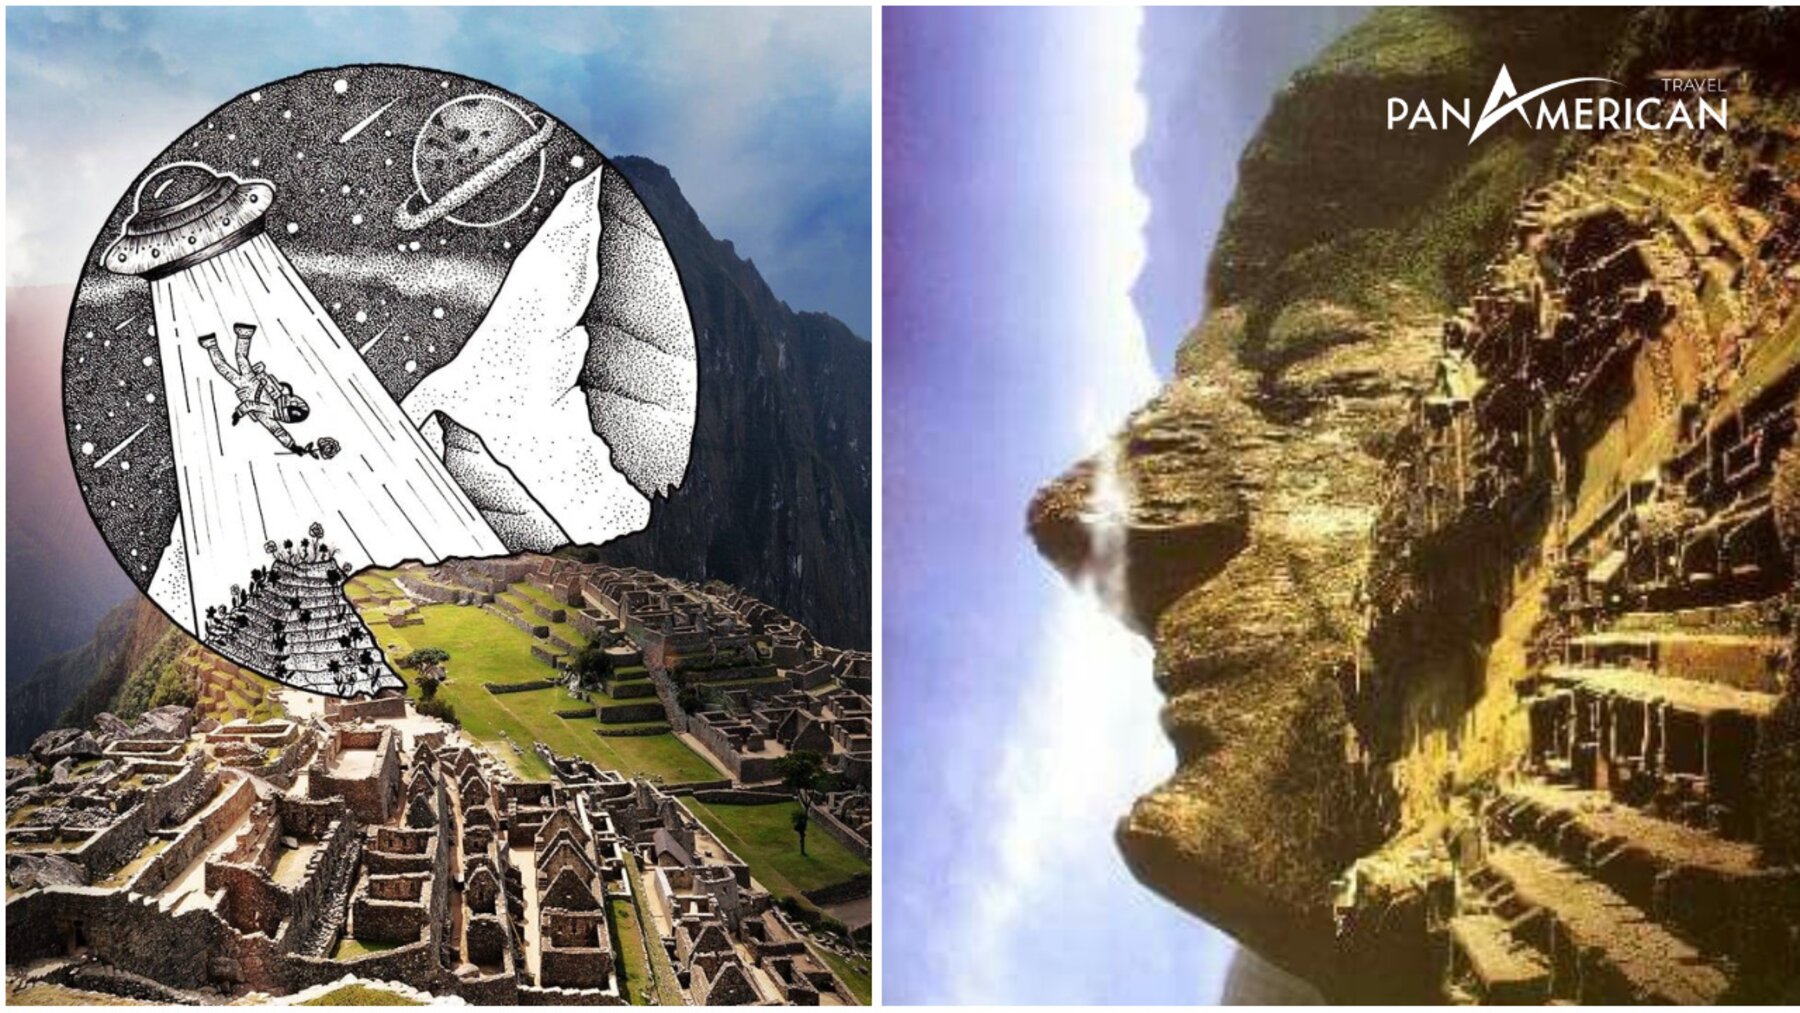 Nhiều giả thuyết khác về người ngoài hành tinh liên quan đến Machu Picchu